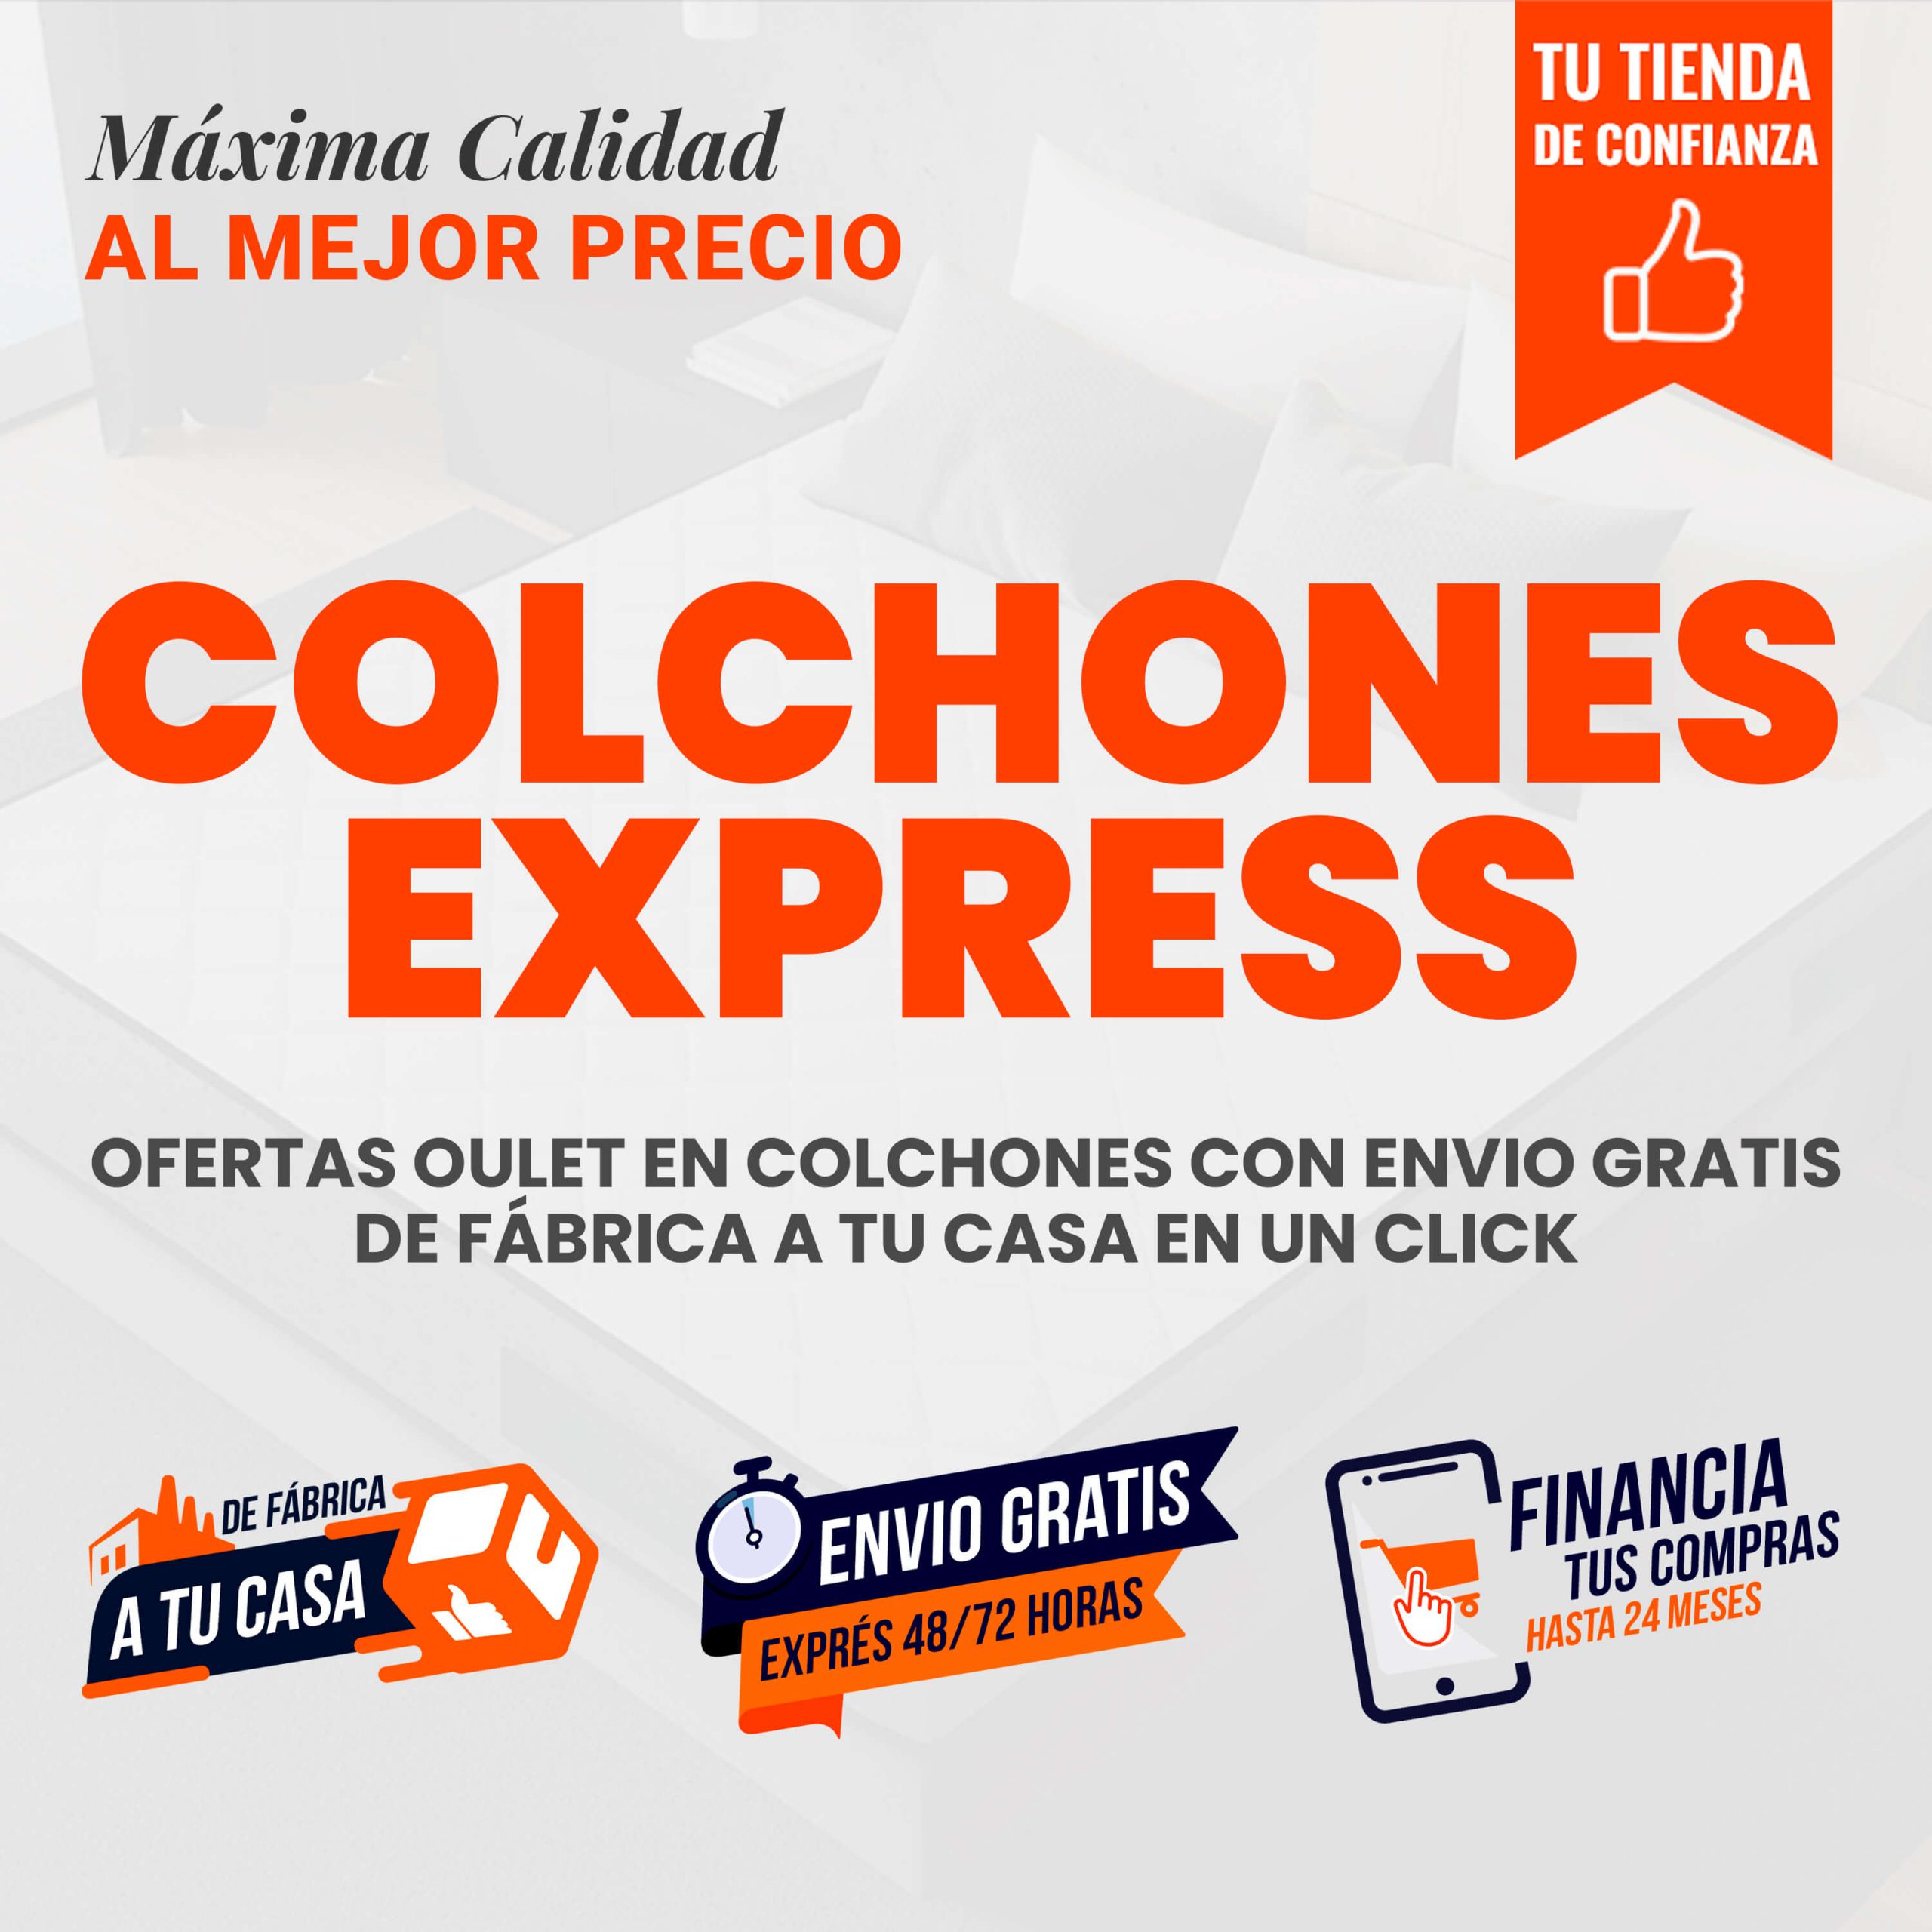 Colchones Express - Envio Gratis en 48 horas | La Tienda 3Bs